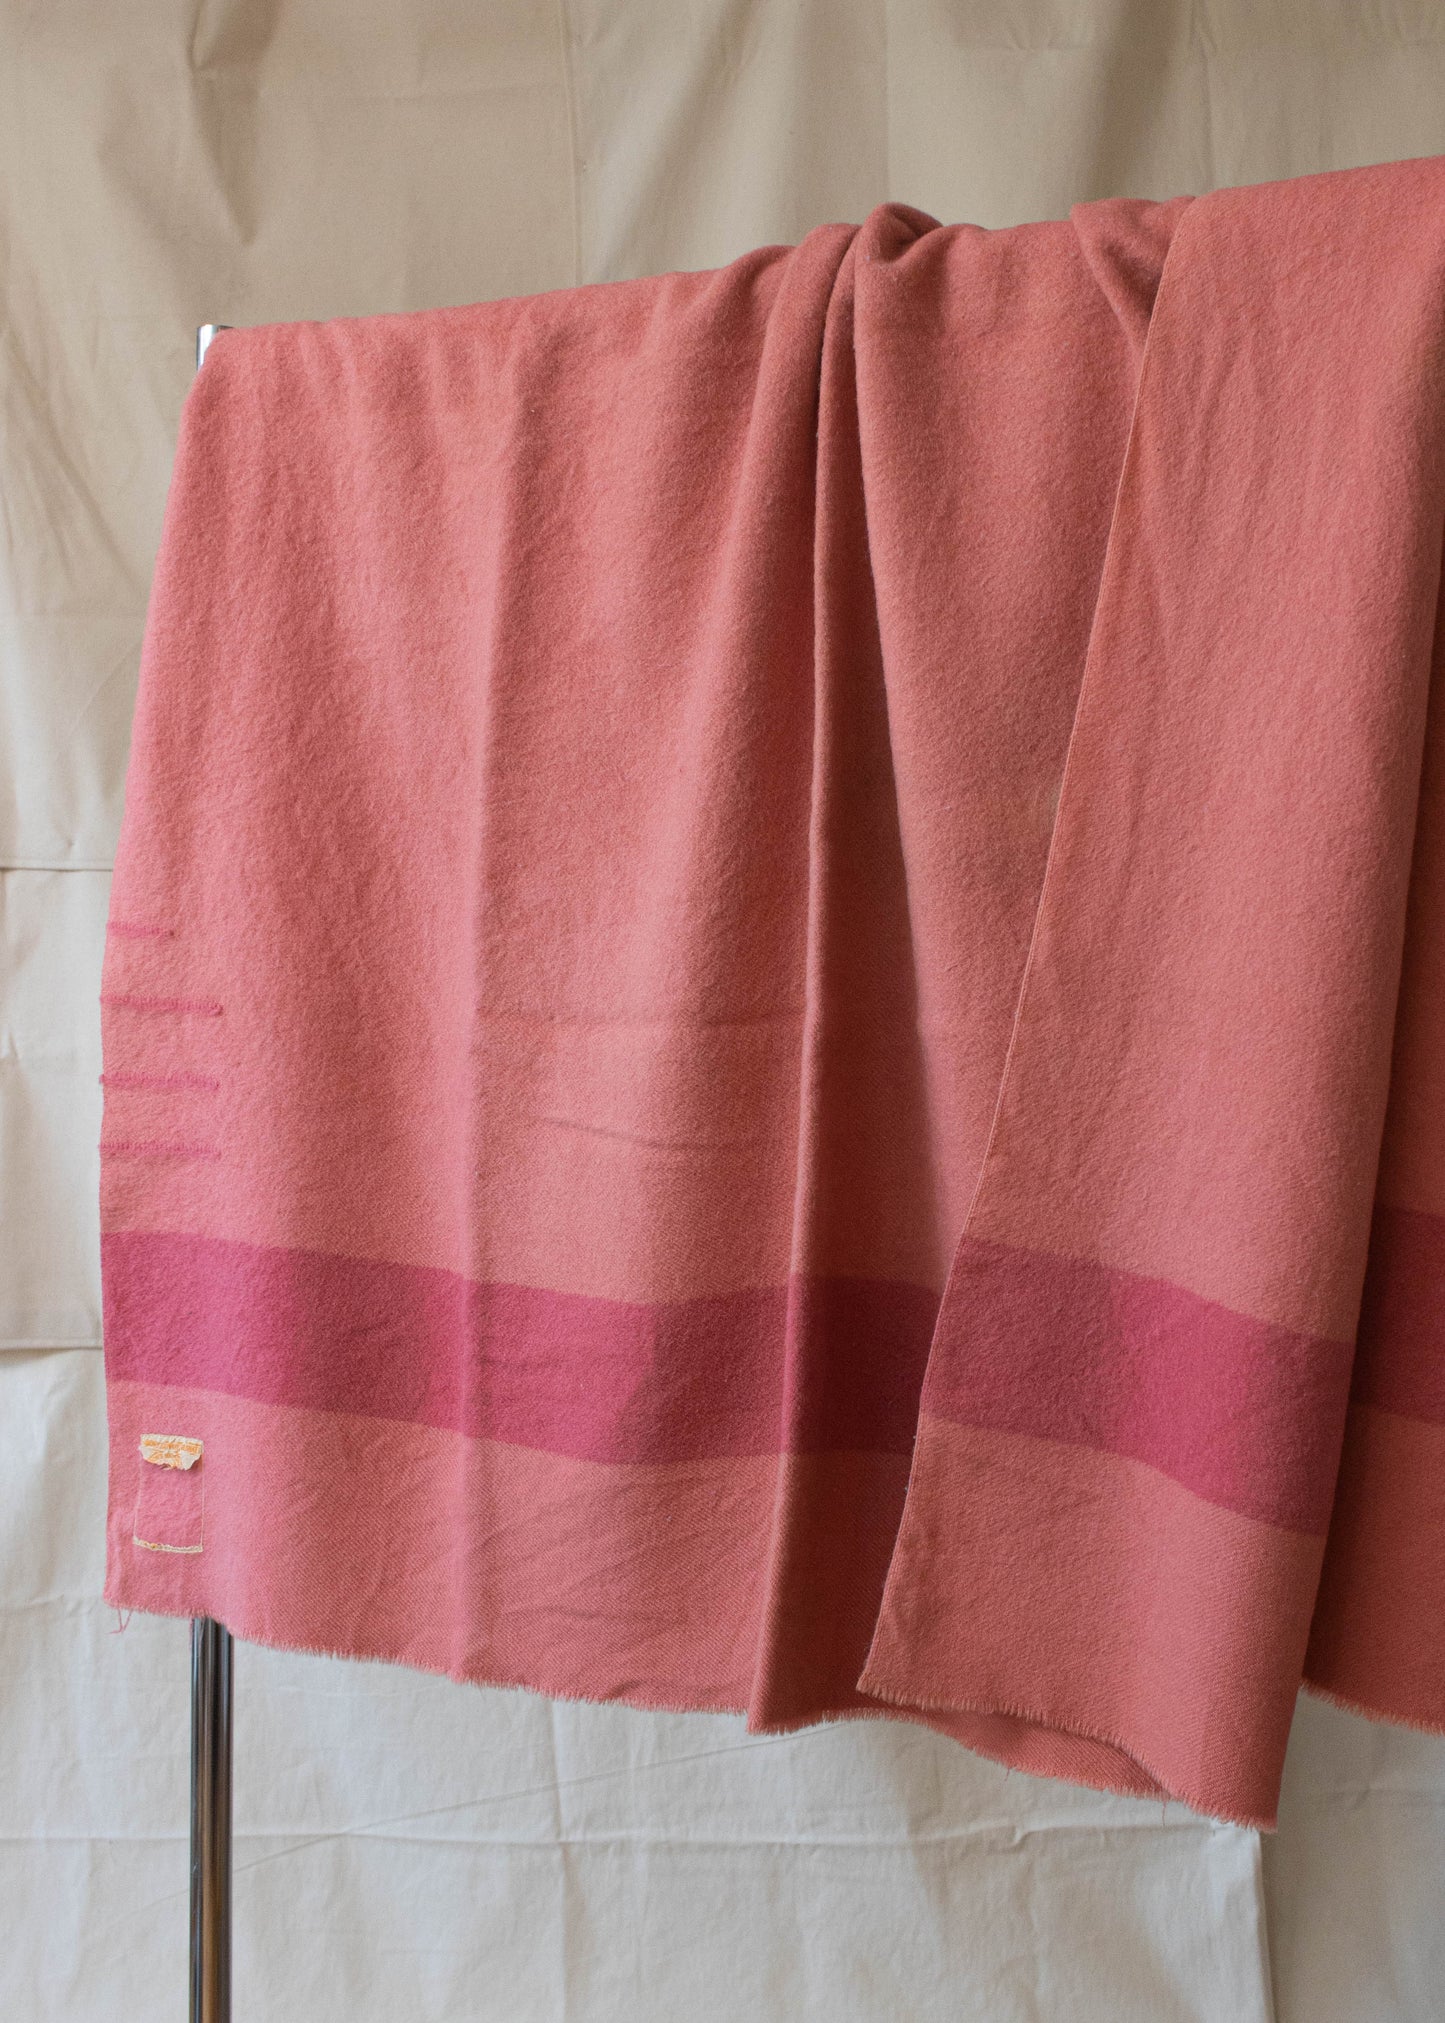 Vintage 1960s Hudson's Bay 3.5 Point Stripe Pattern Wool Blanket Size Twin